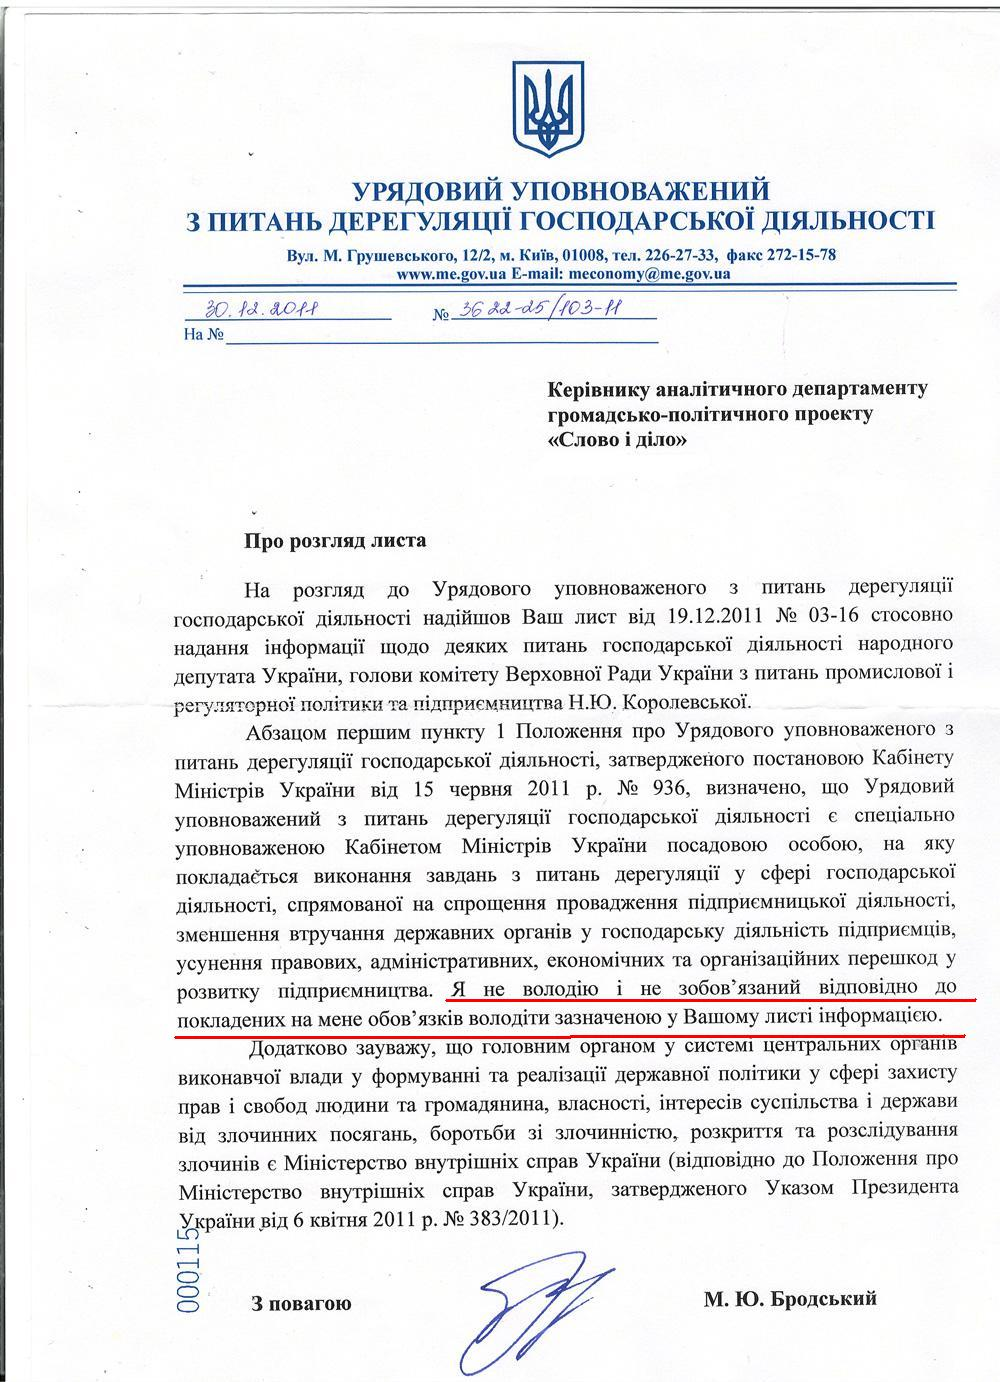 Письмо государственного уполномоченного по вопросам дерегуляции хозяйственной деятельности М.Бродского